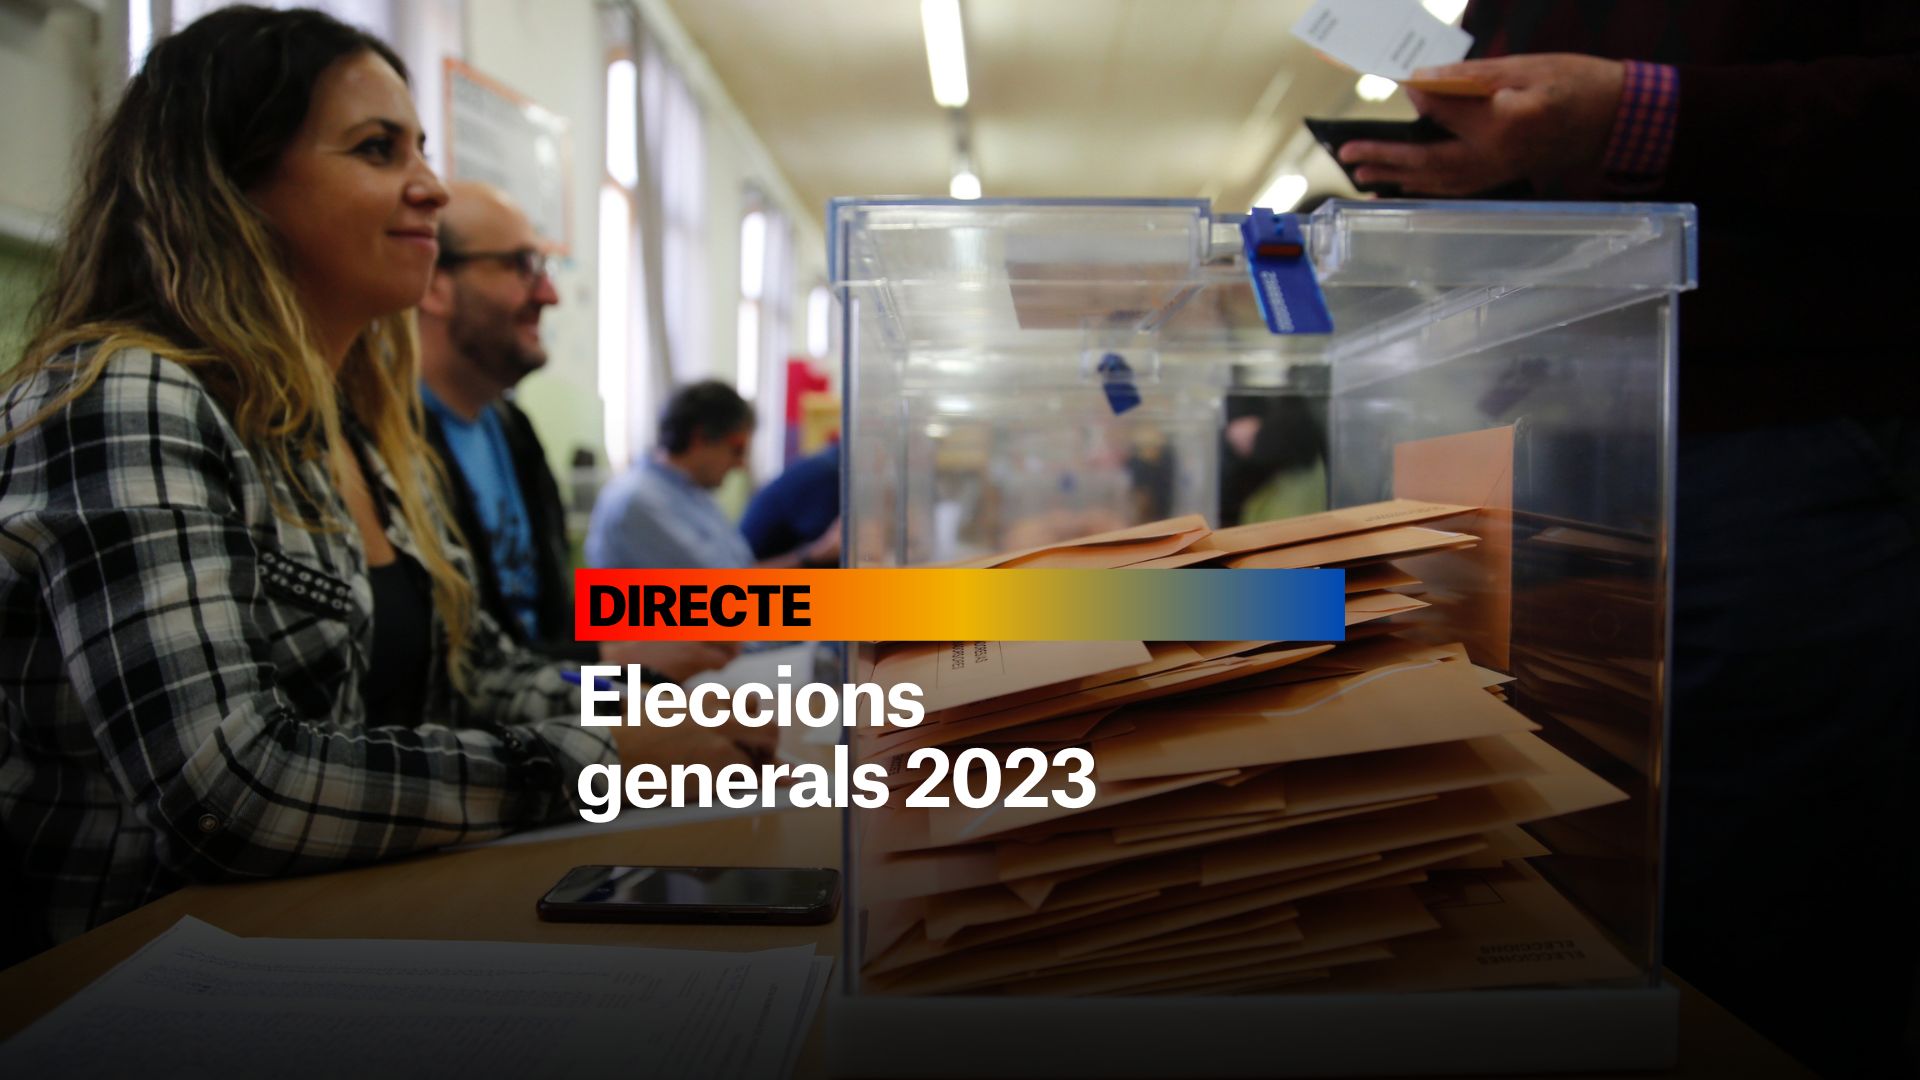 Eleccions generals 2023, DIRECTE | Últimes notícies del 12 de juliol